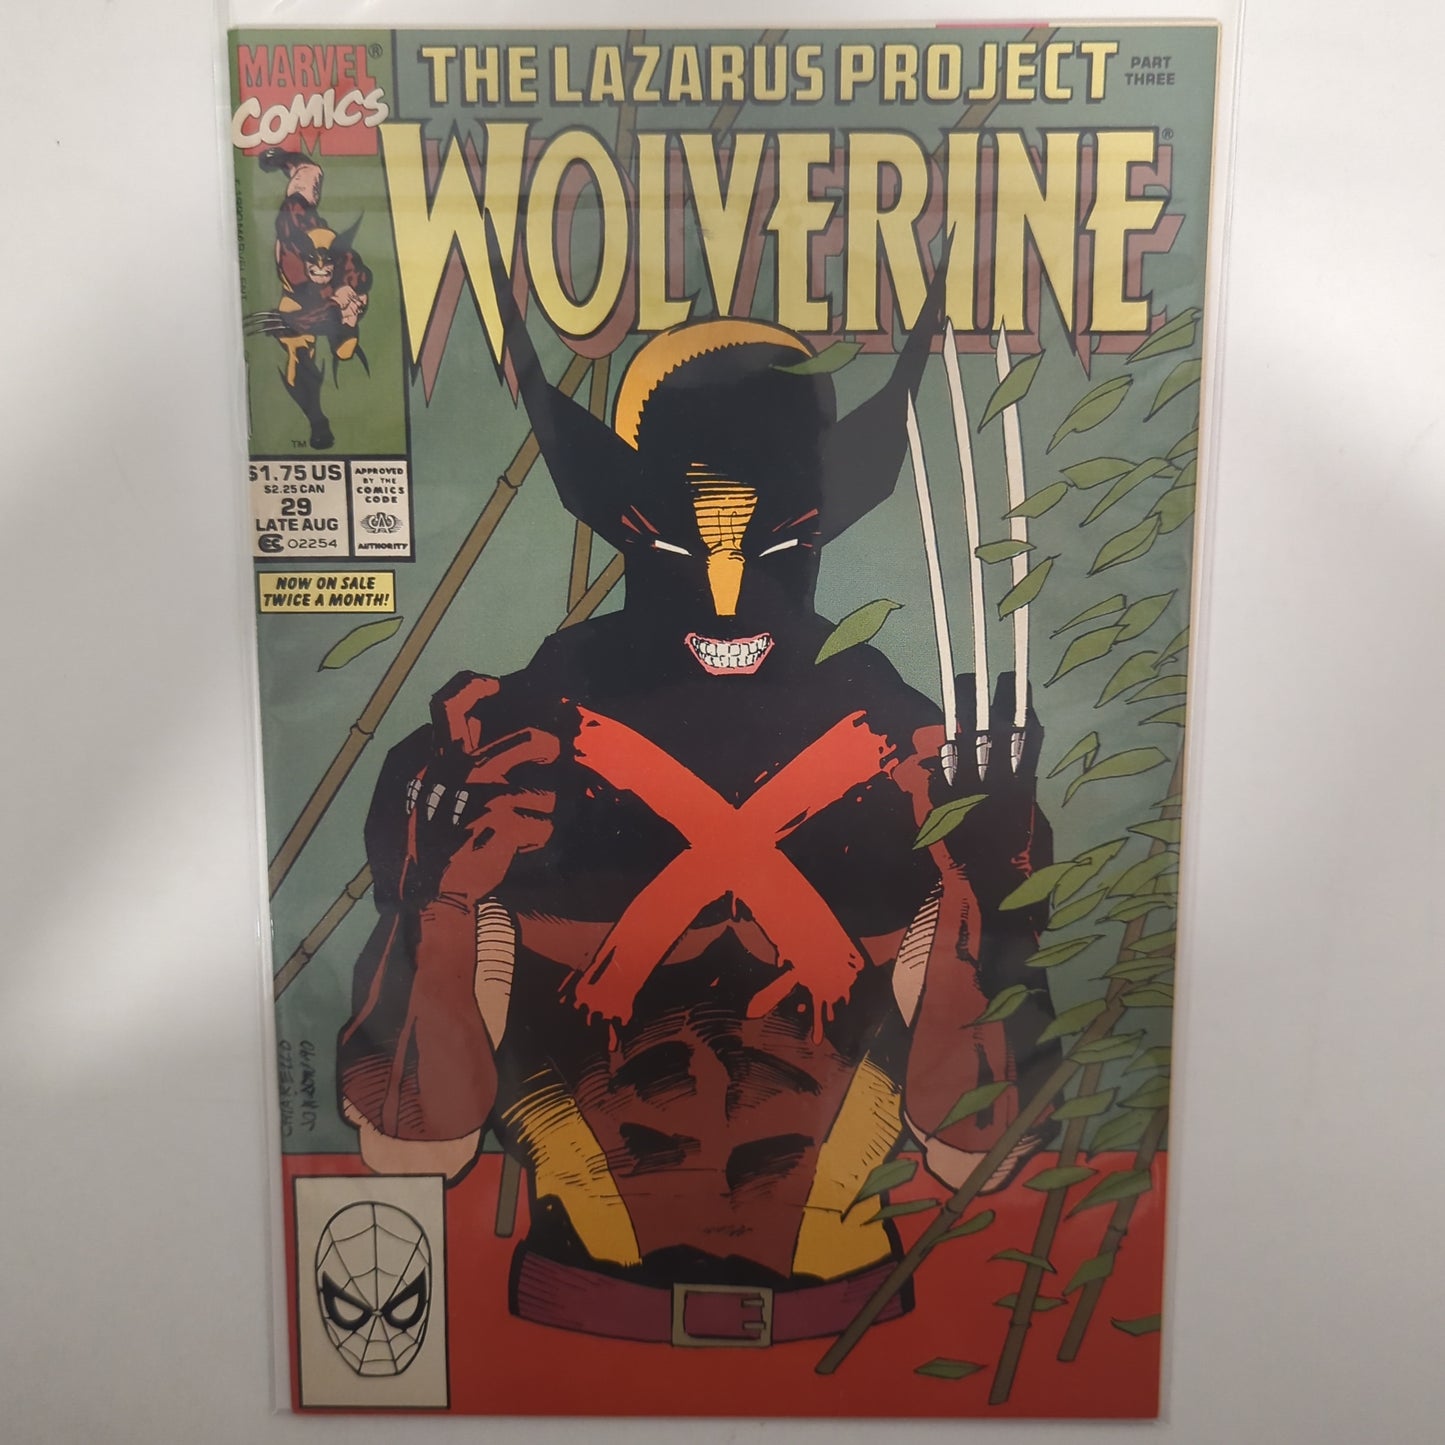 Wolverine #29